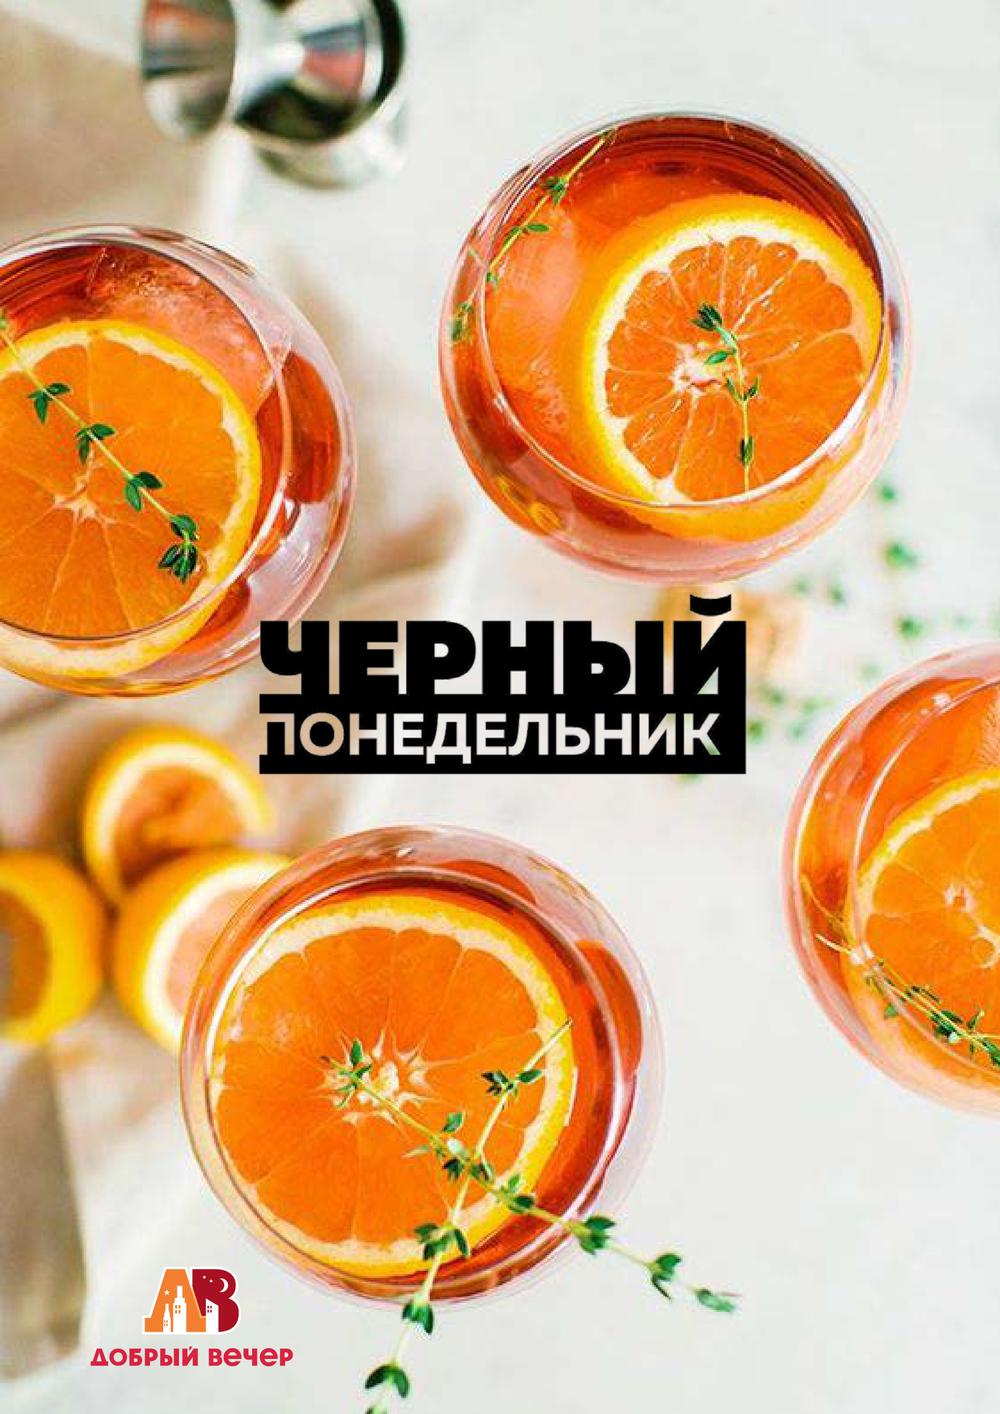 Алкогольные Магазины Сергиев Посад